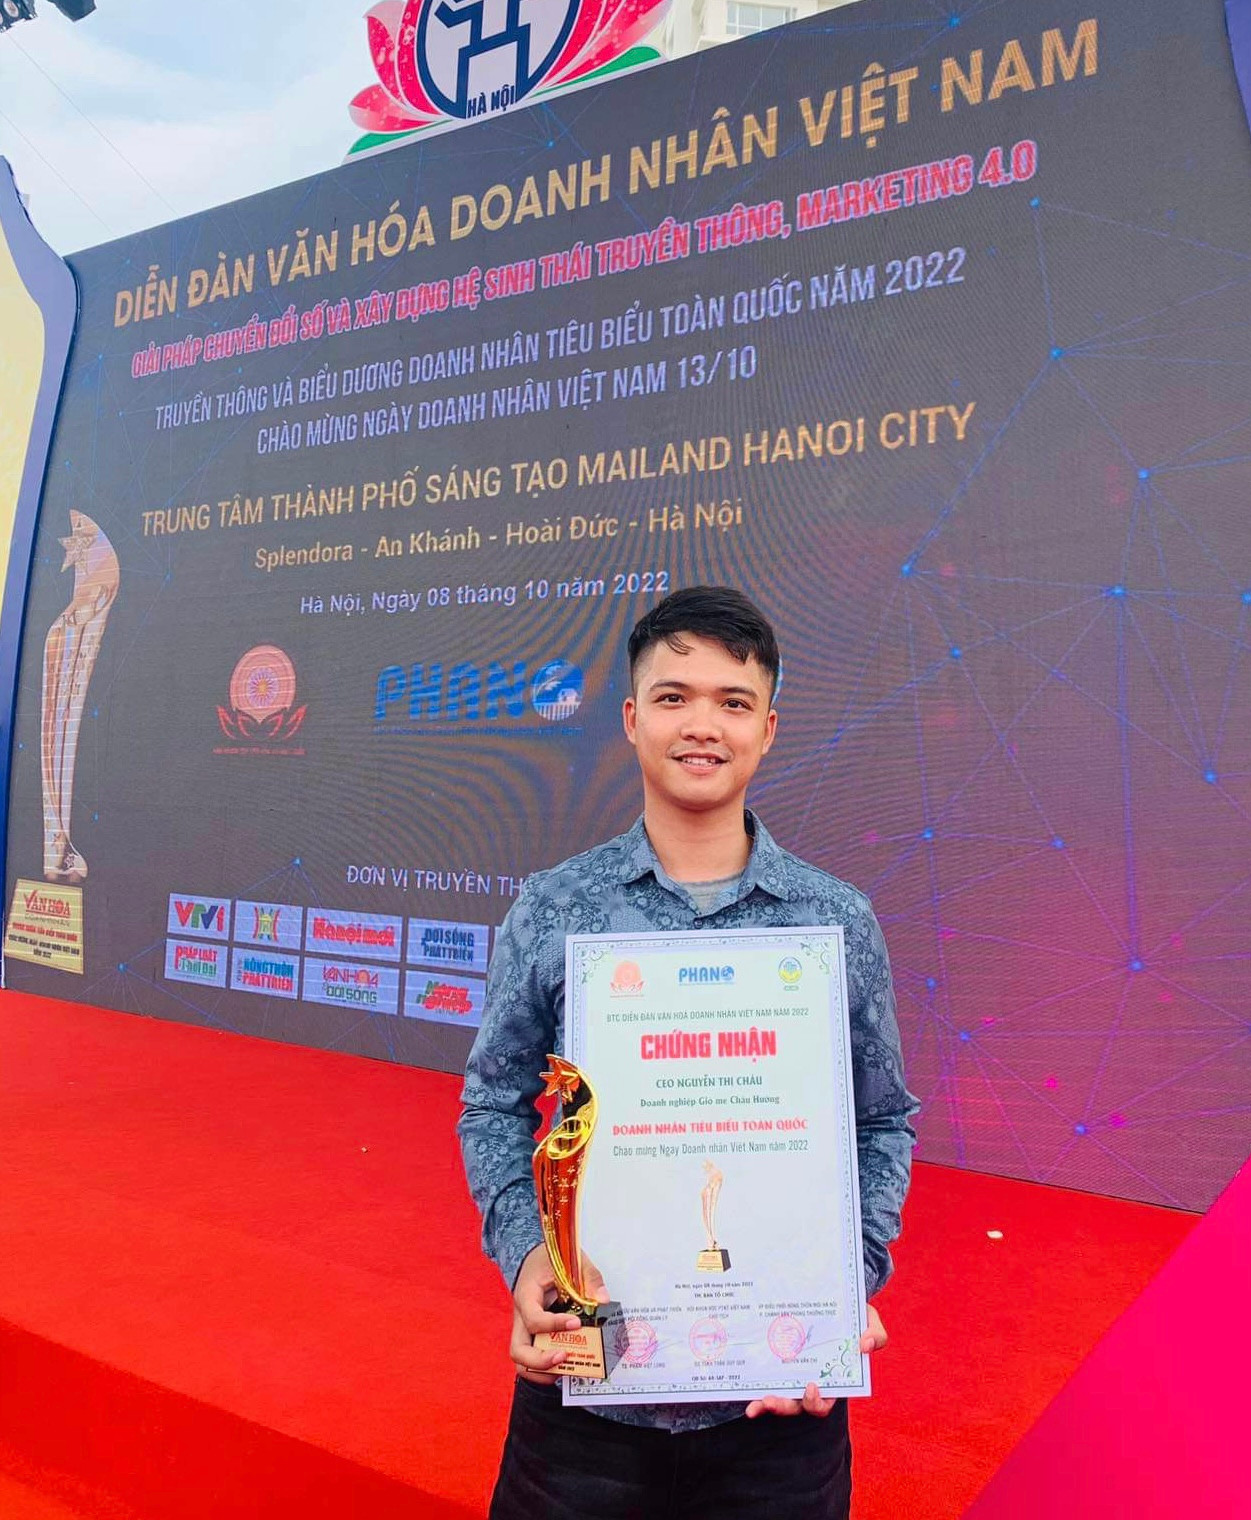 Cơ sở kinh doanh của Nguyễn Văn Huy được biểu dương tại Diễn đàn Văn hóa doanh nhân Việt Nam năm 2022. Ảnh: NVCC.